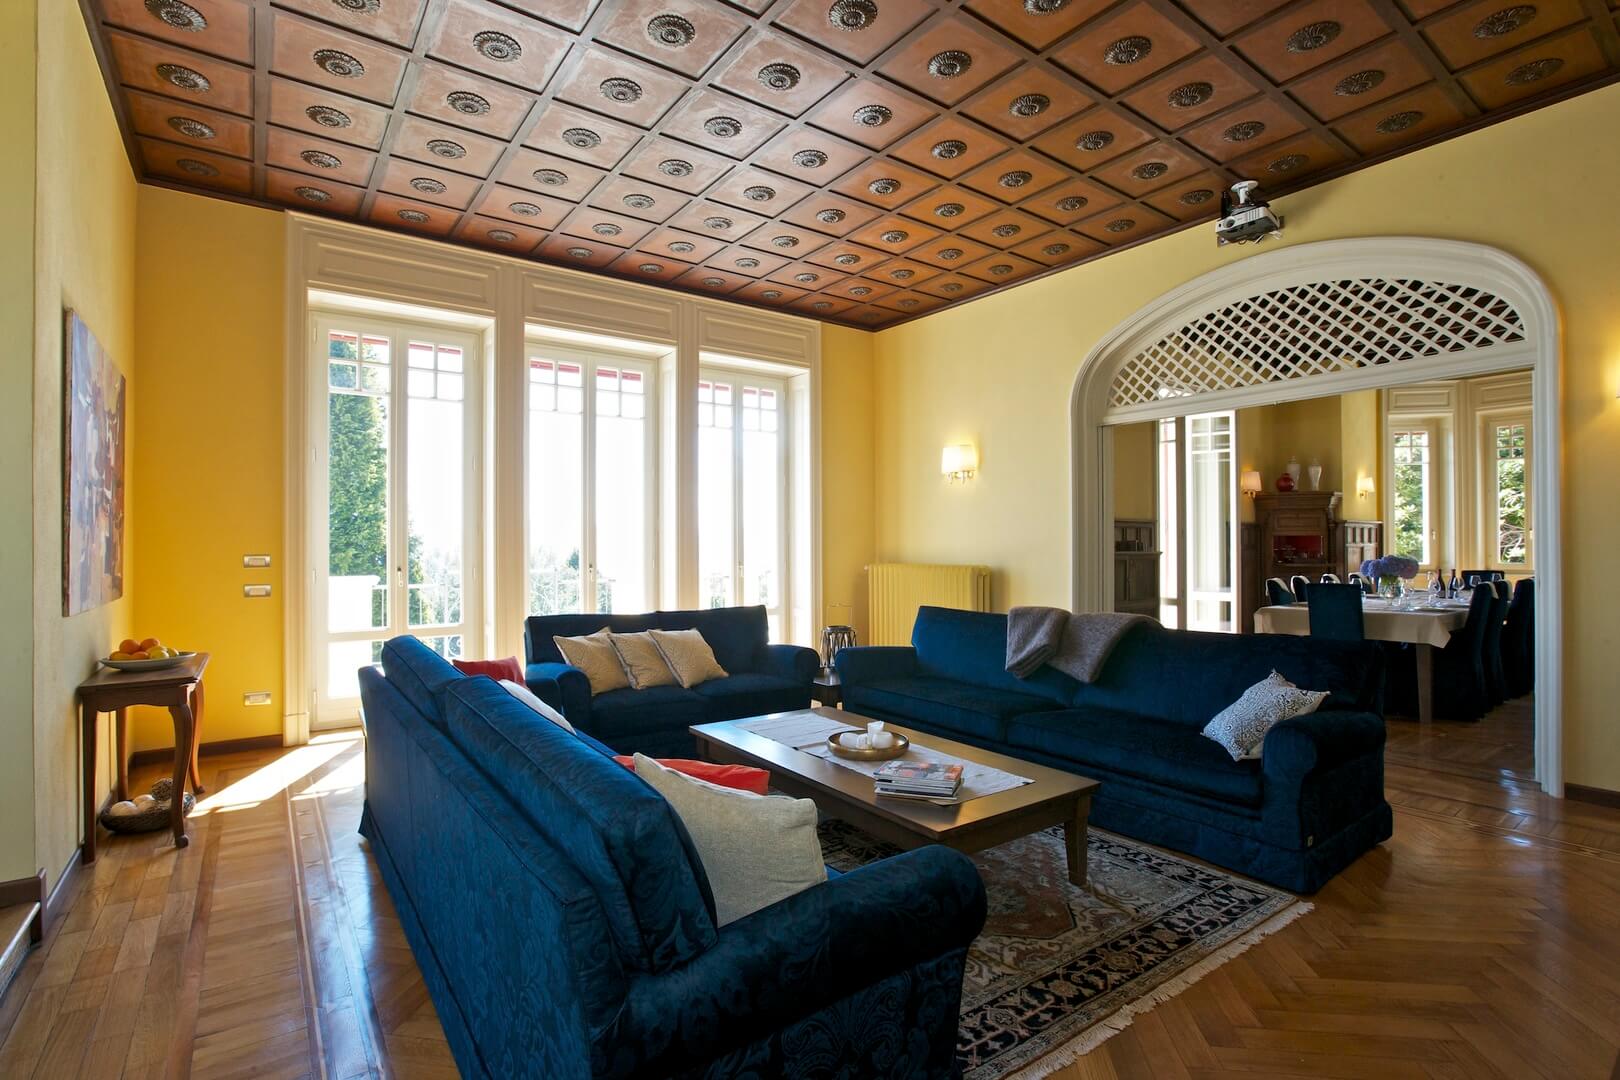 Indoor images at Villa Confalonieri